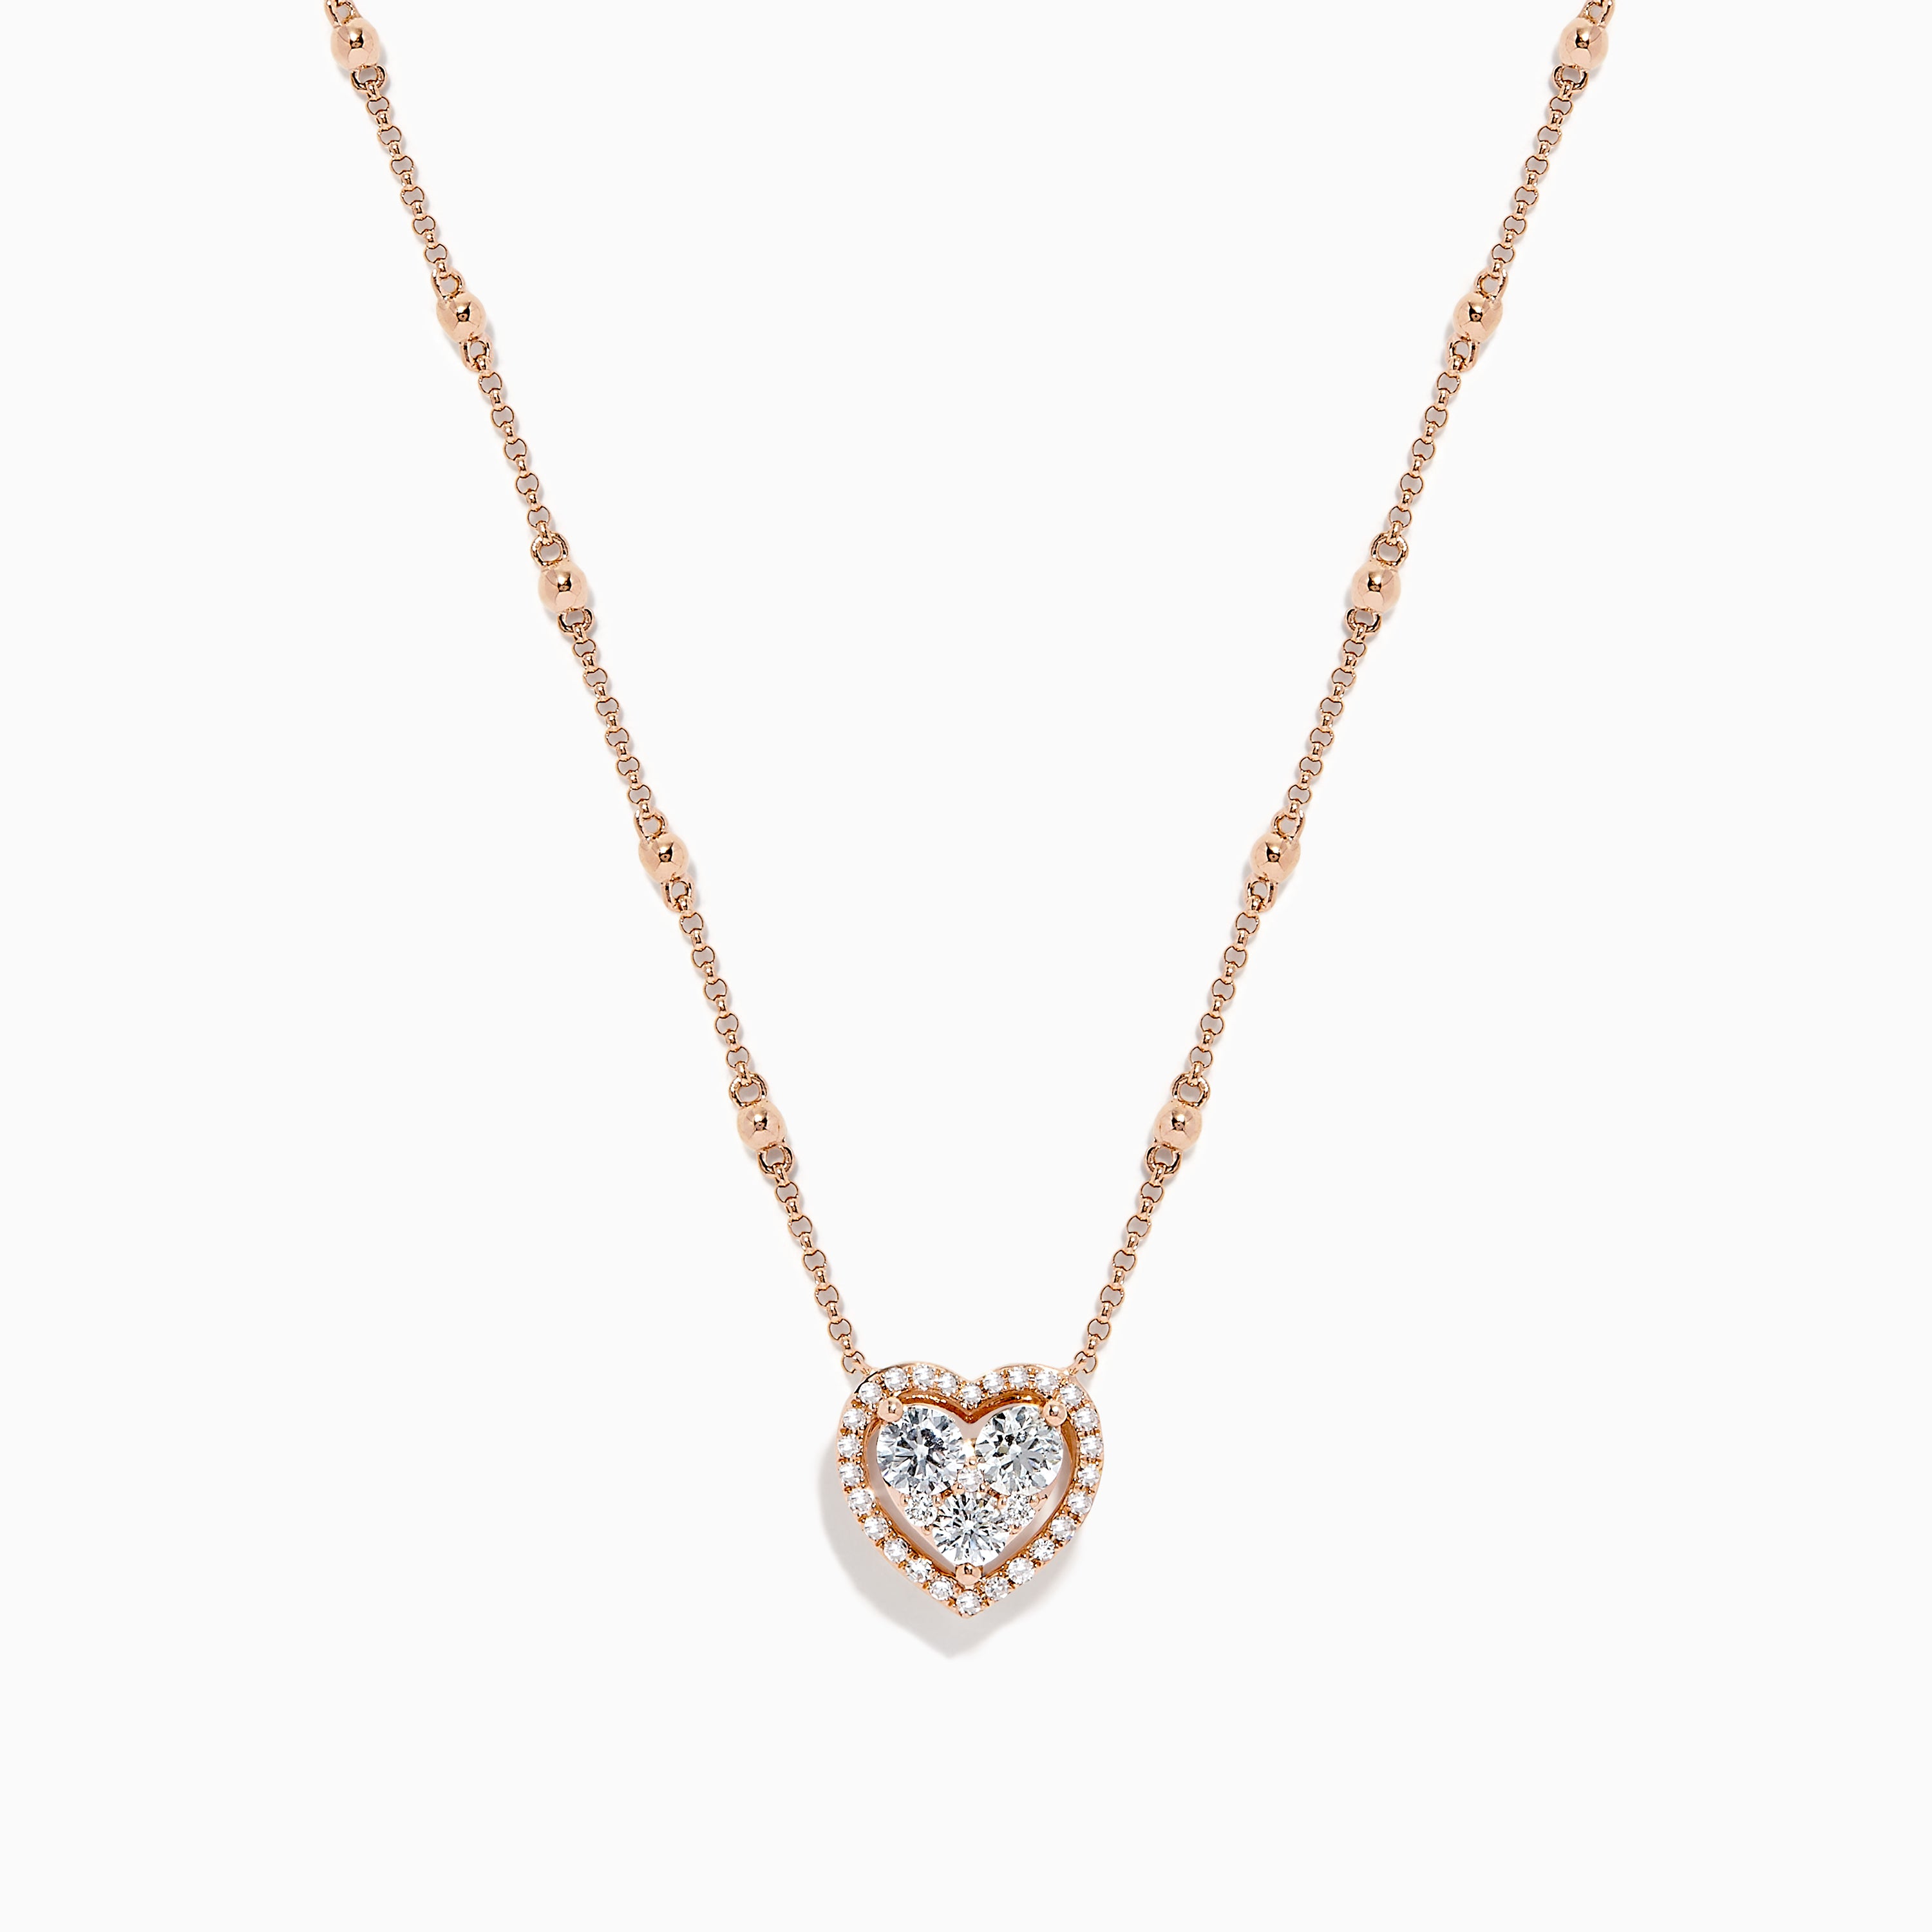 Effy Novelty 14K Rose Gold Diamond Heart Necklace, 0.64 TCW